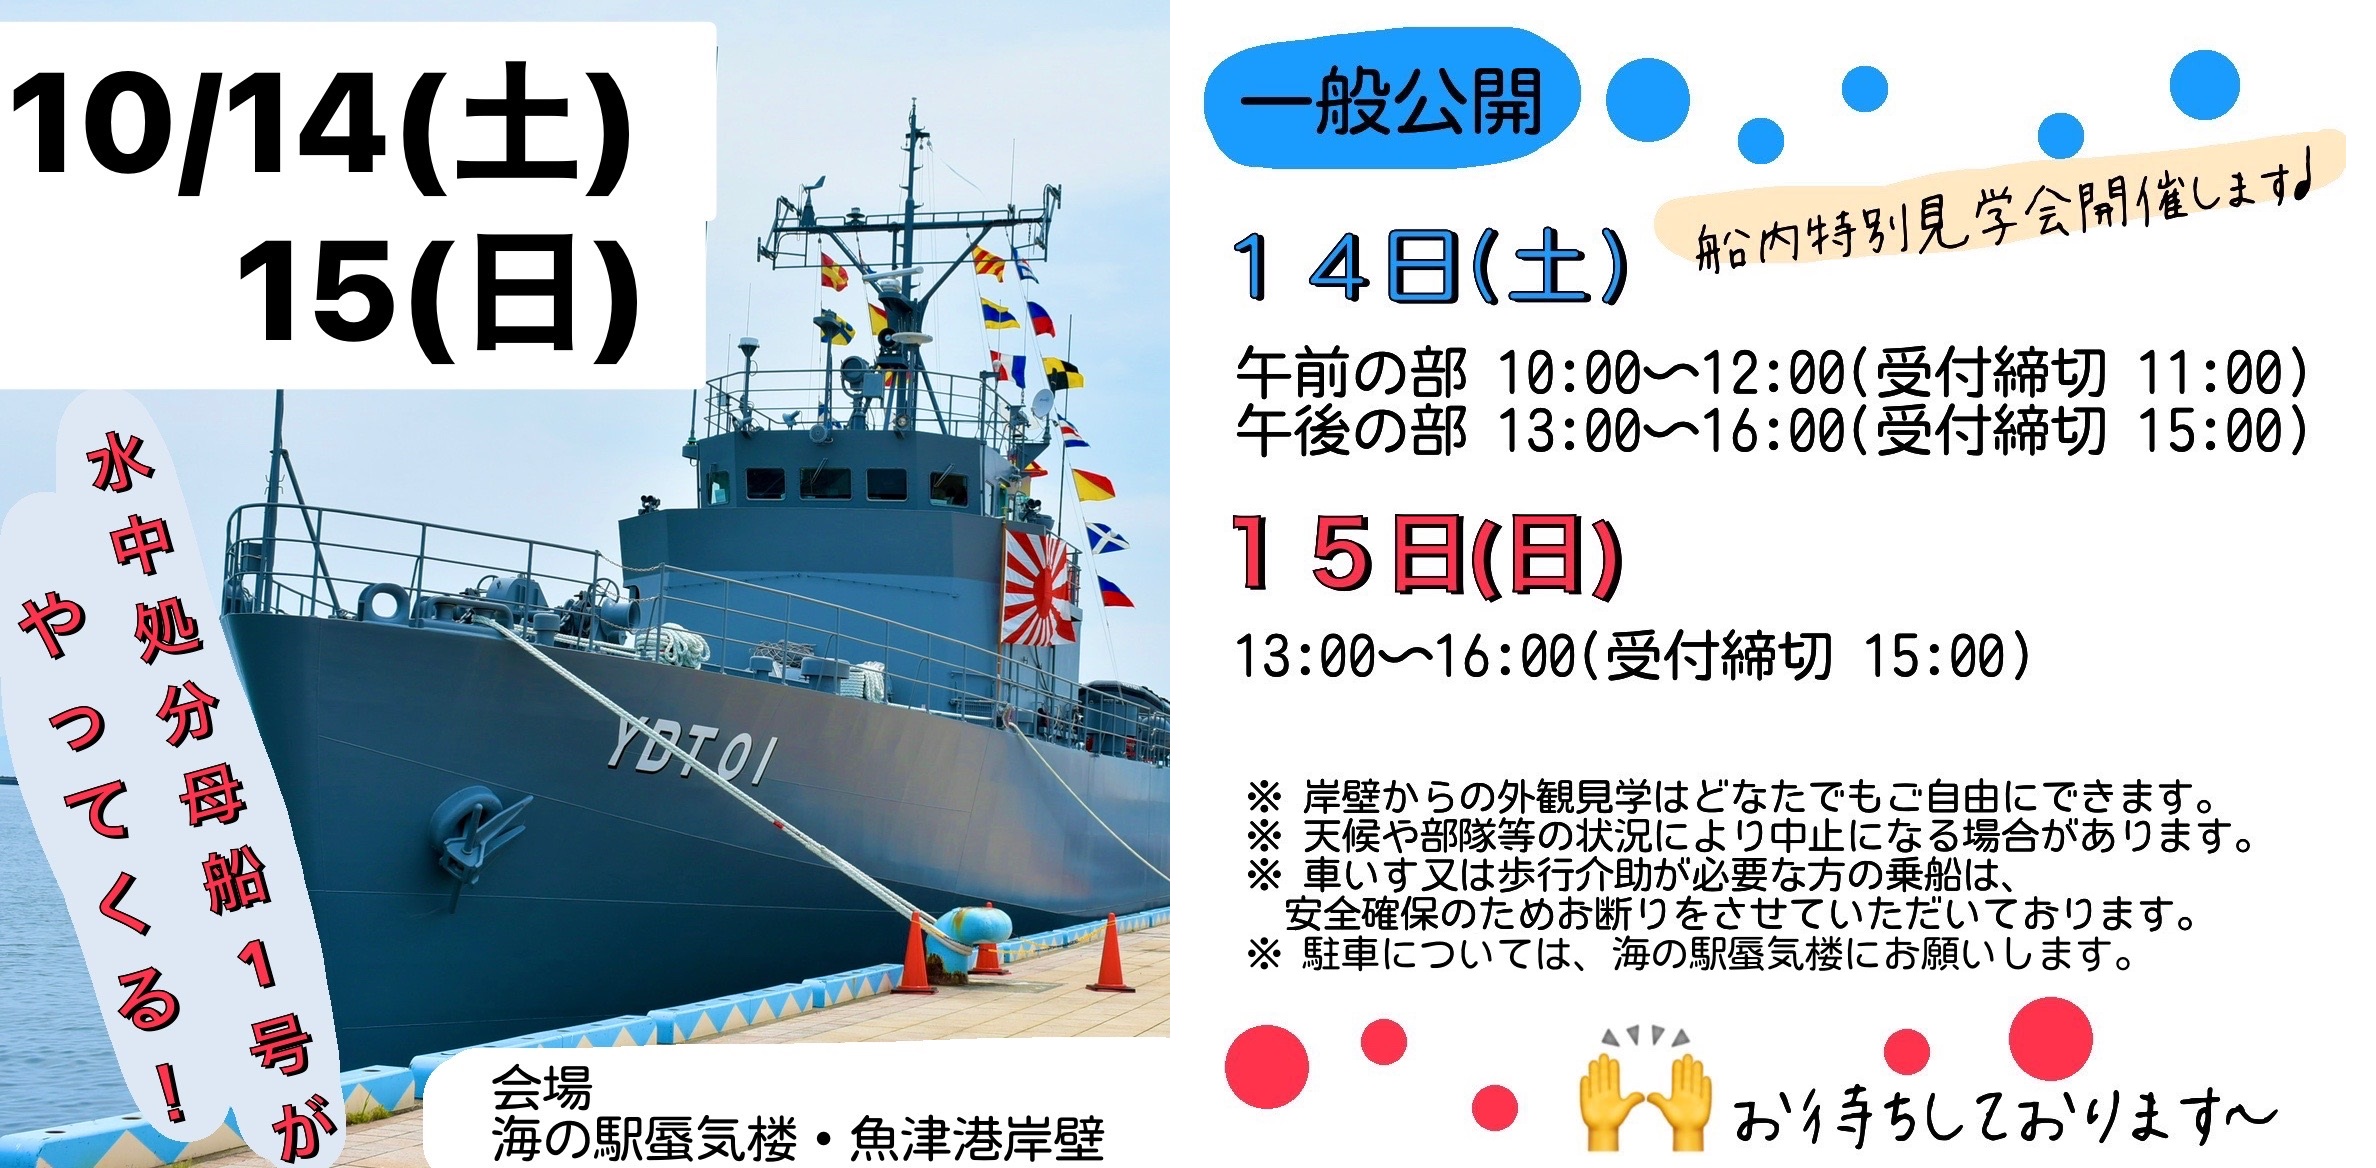 海上自衛隊「水中処分母船1号（YDT01）」一般公開 in 魚津港：ポスター